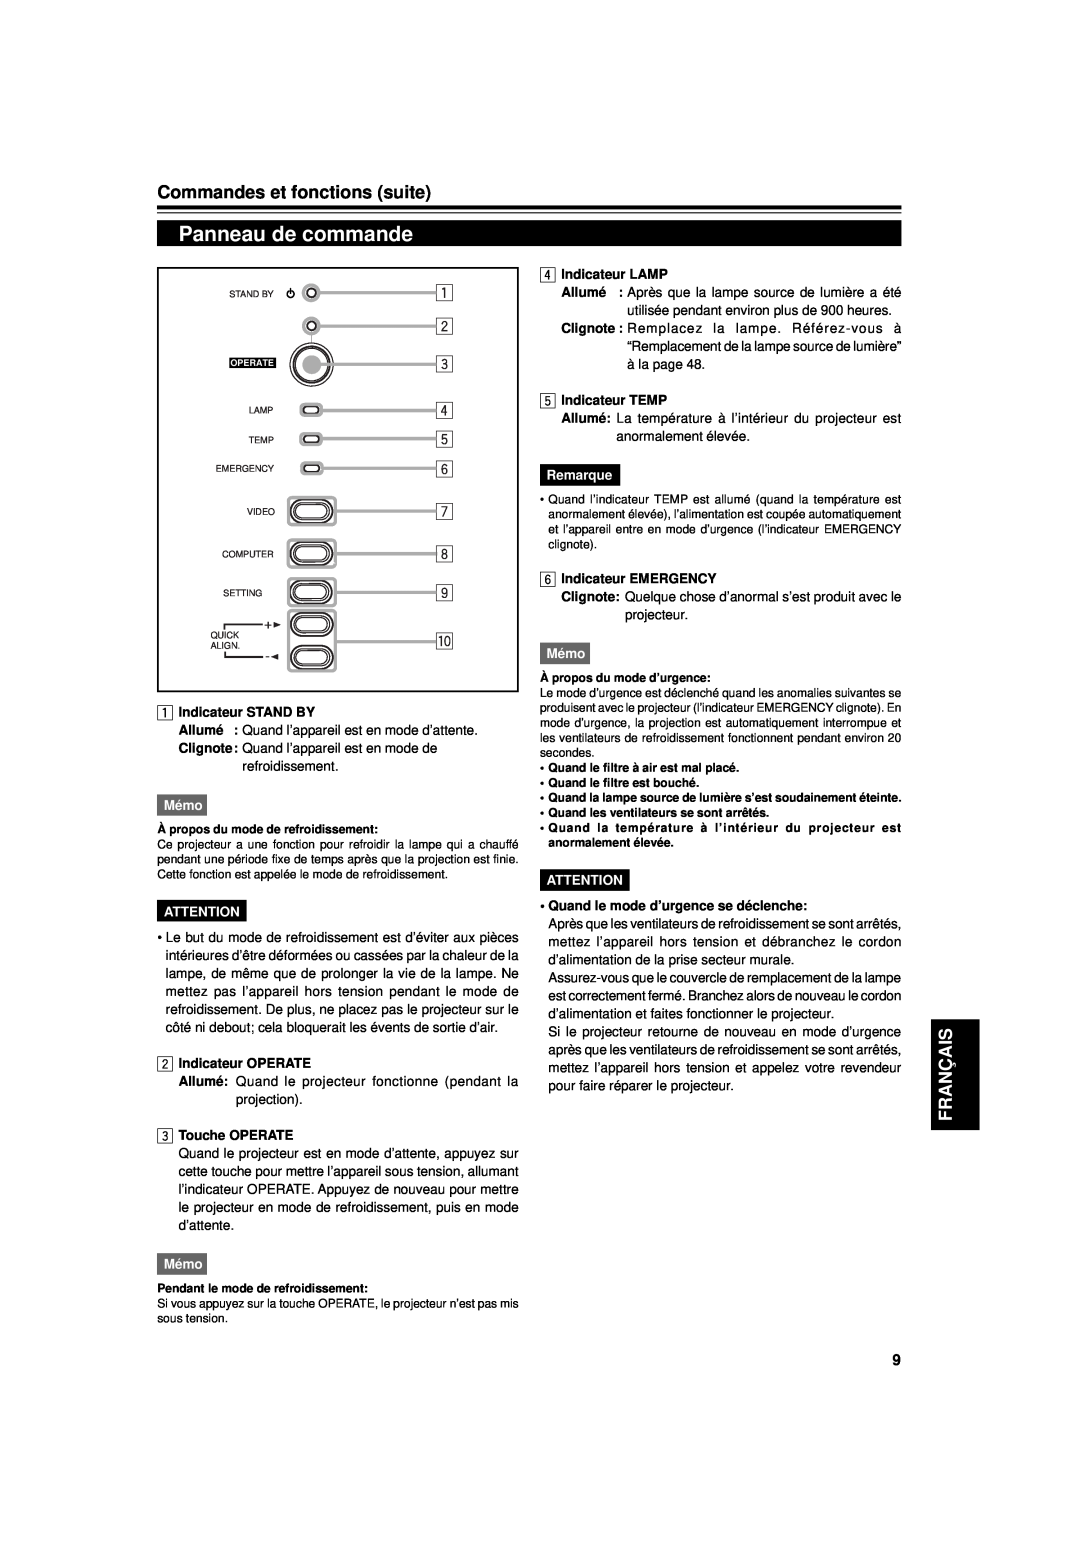 JVC DLA-G15U Panneau de commande, Commandes et fonctions suite, Français, Indicateur STAND BY, Mémo, Indicateur OPERATE 